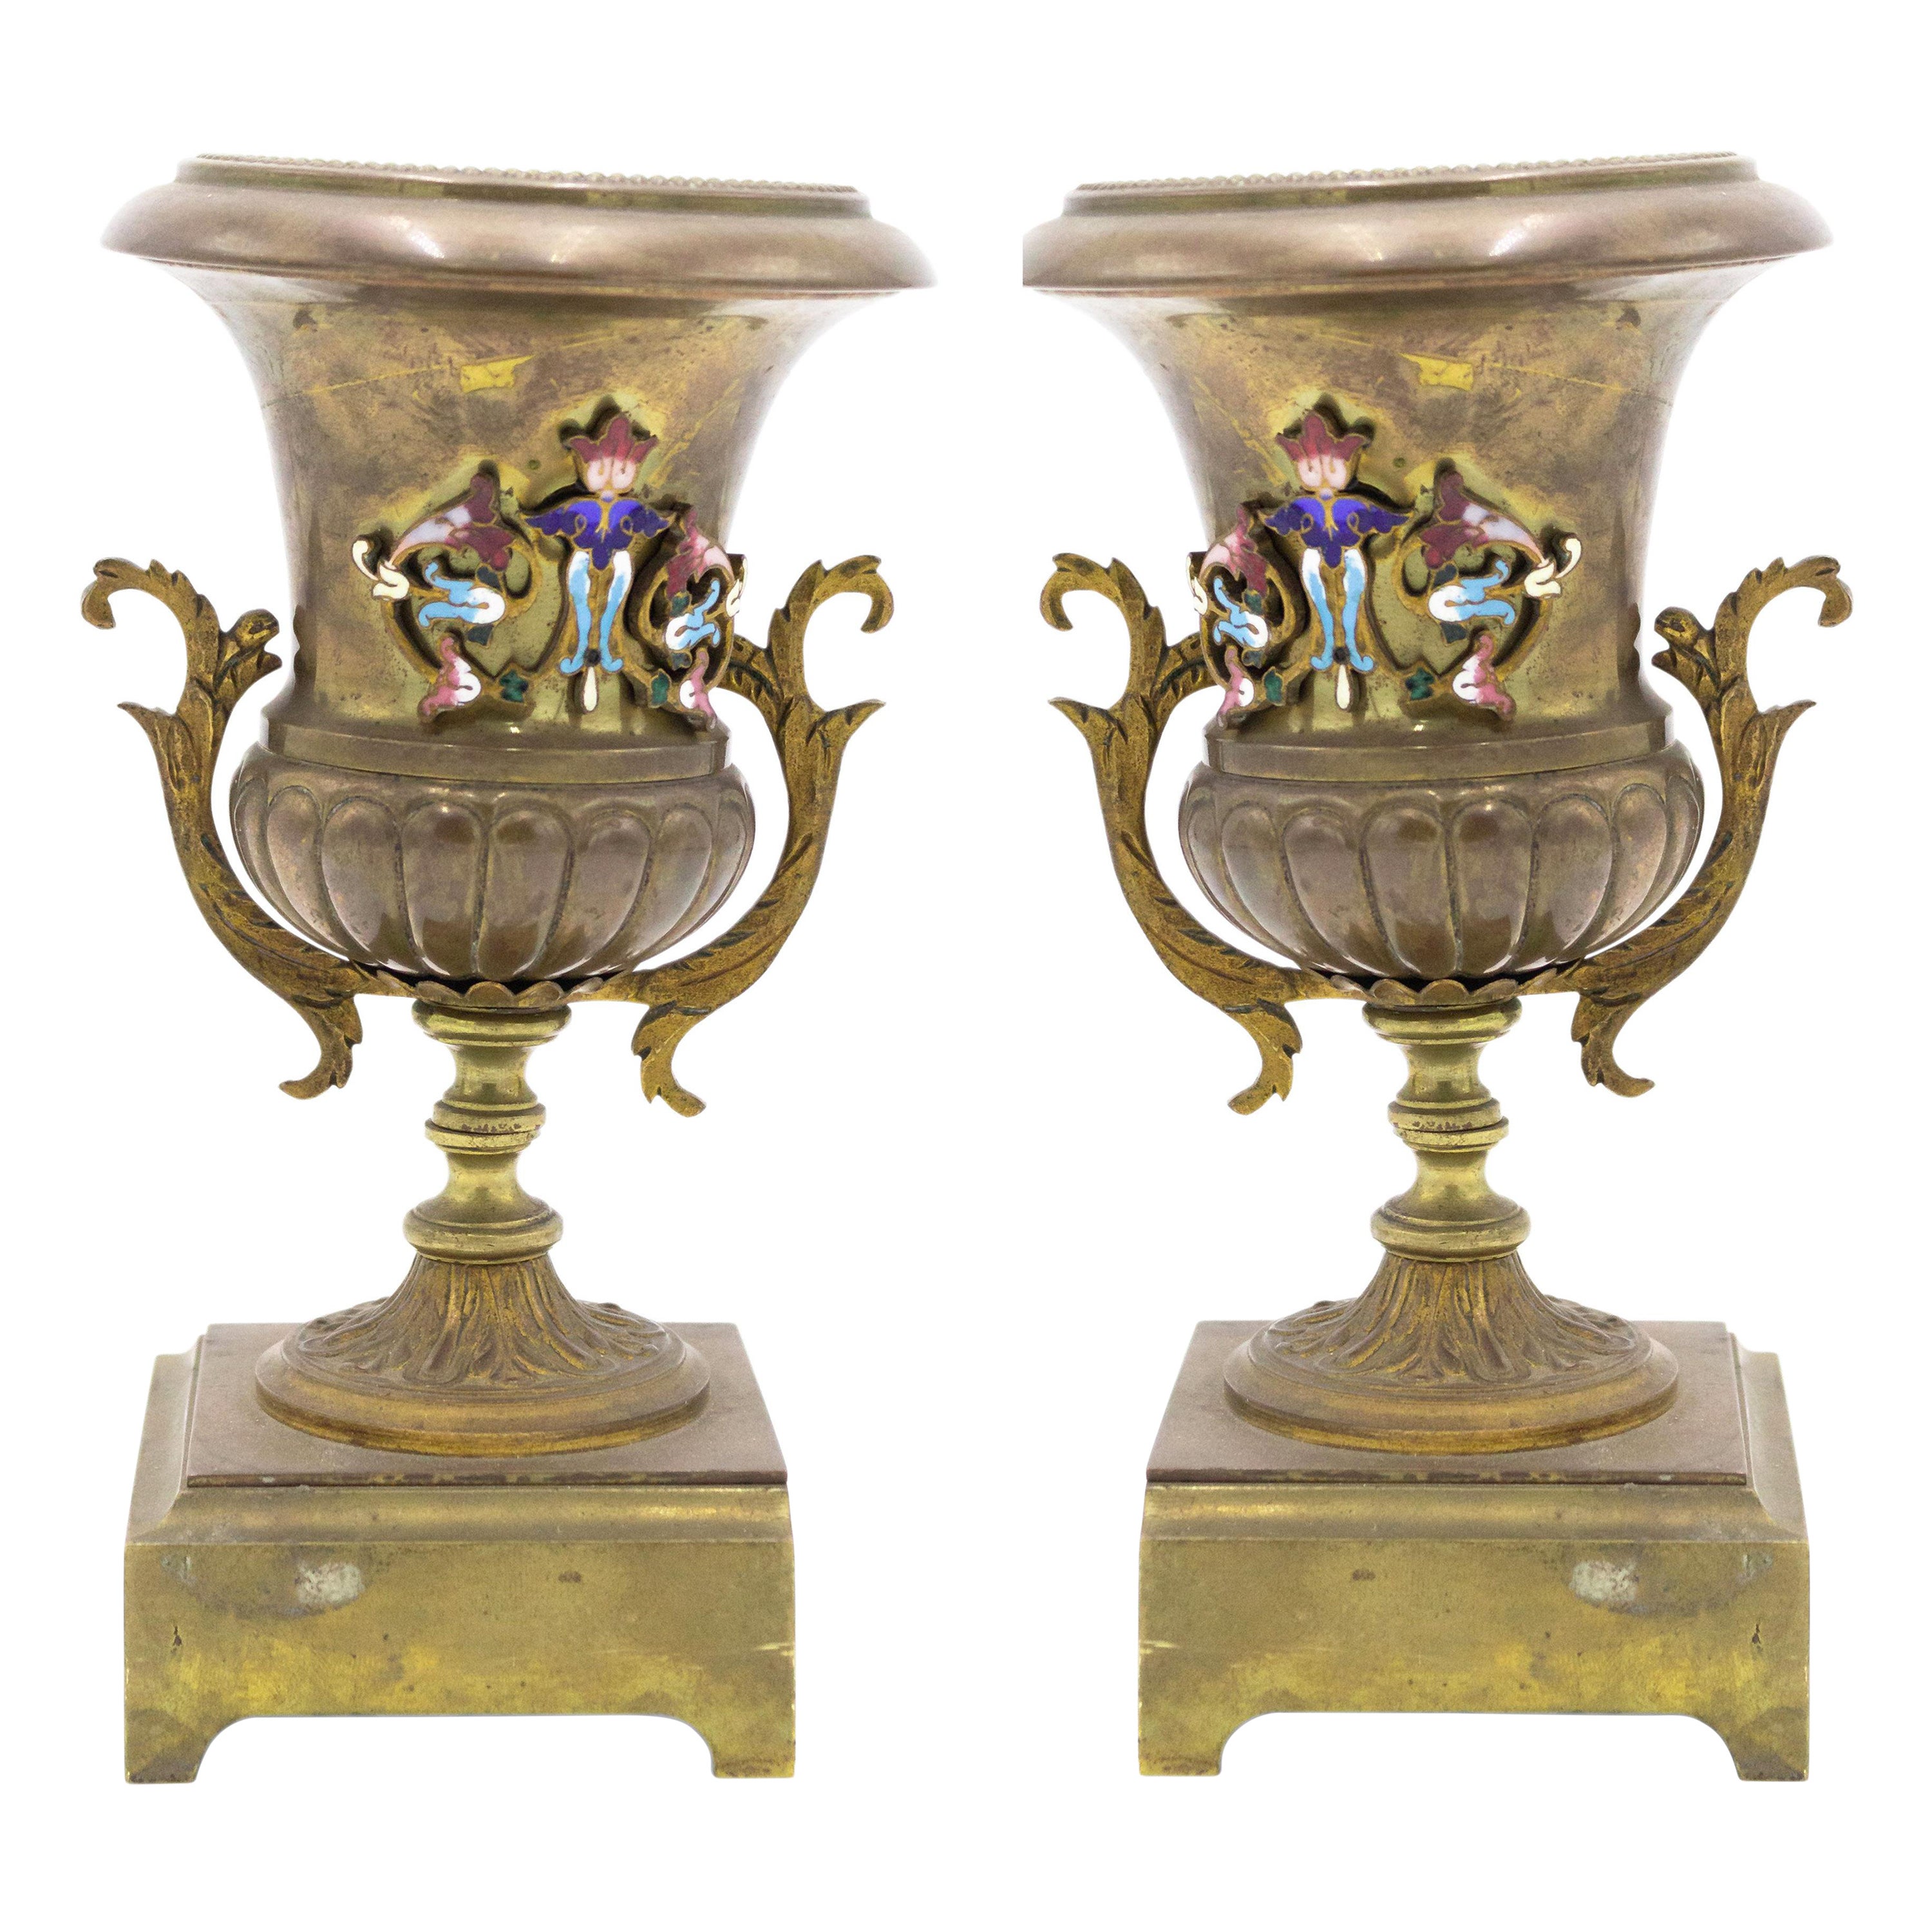 Paire d'urnes en bronze victoriennes de la fin du 19e siècle